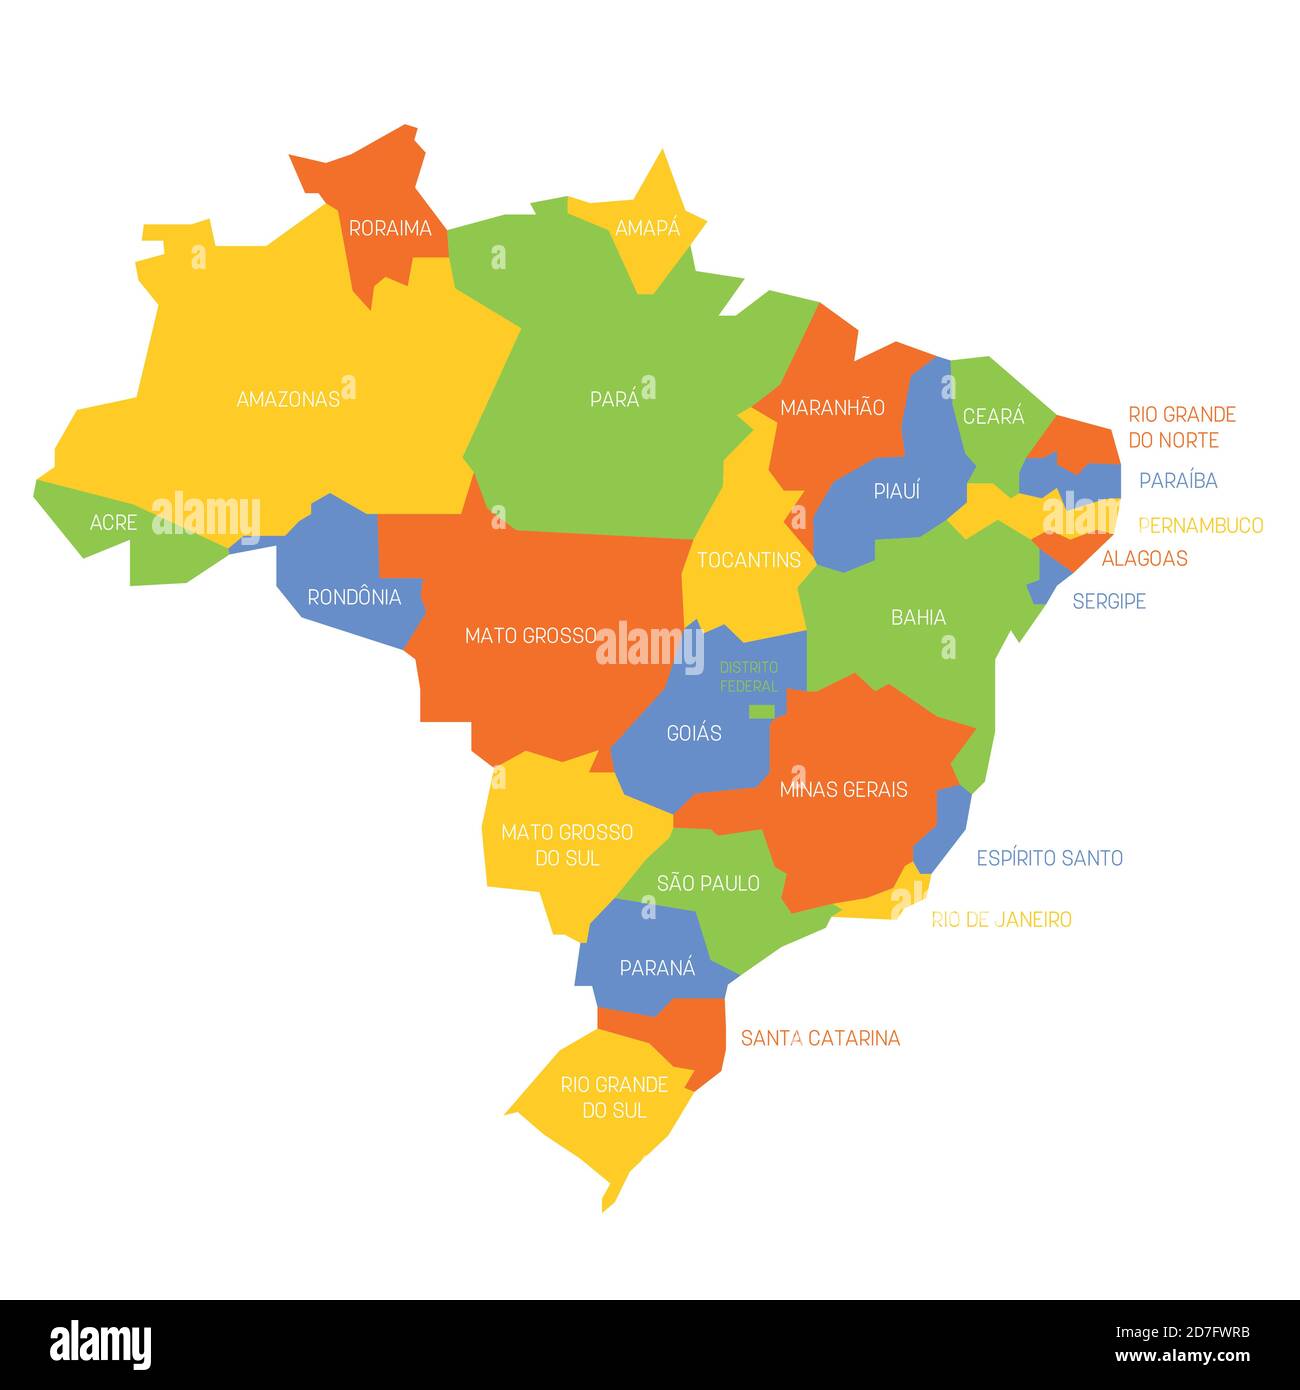 Bunte politische Landkarte von Brasilien. Verwaltungsabteilungen - Staaten. Einfache flache Vektorkarte mit Beschriftungen. Stock Vektor